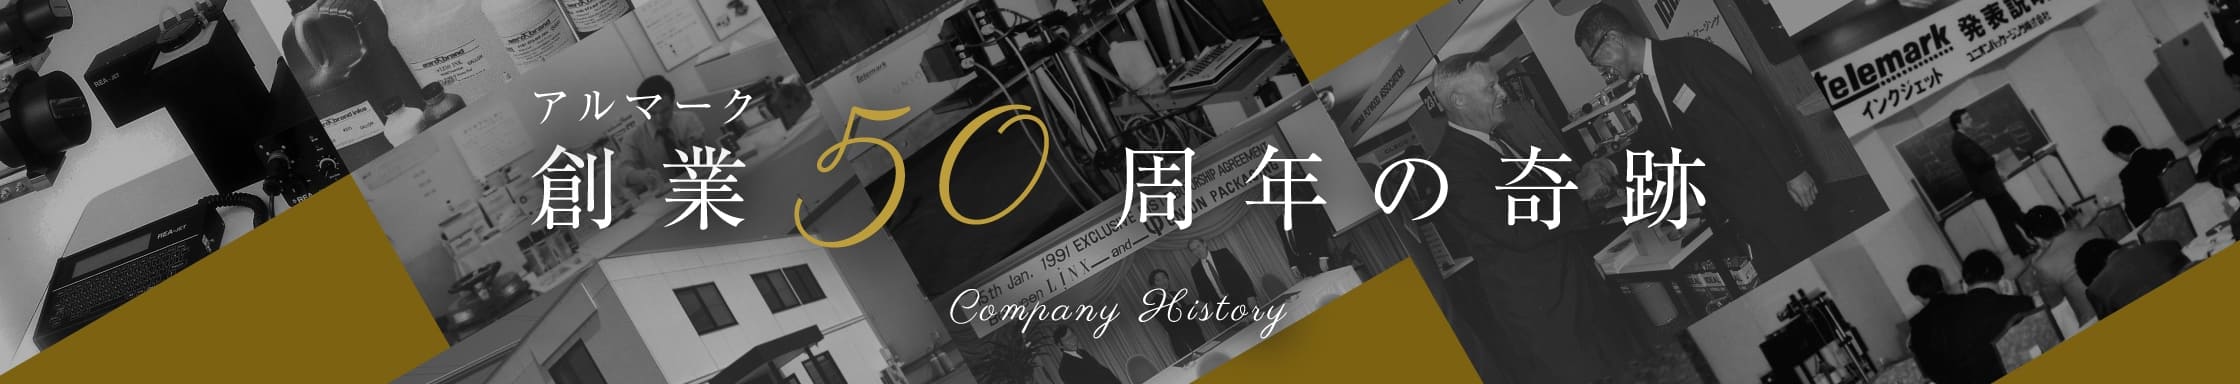 アルマーク 創業50周年の奇跡 Company History